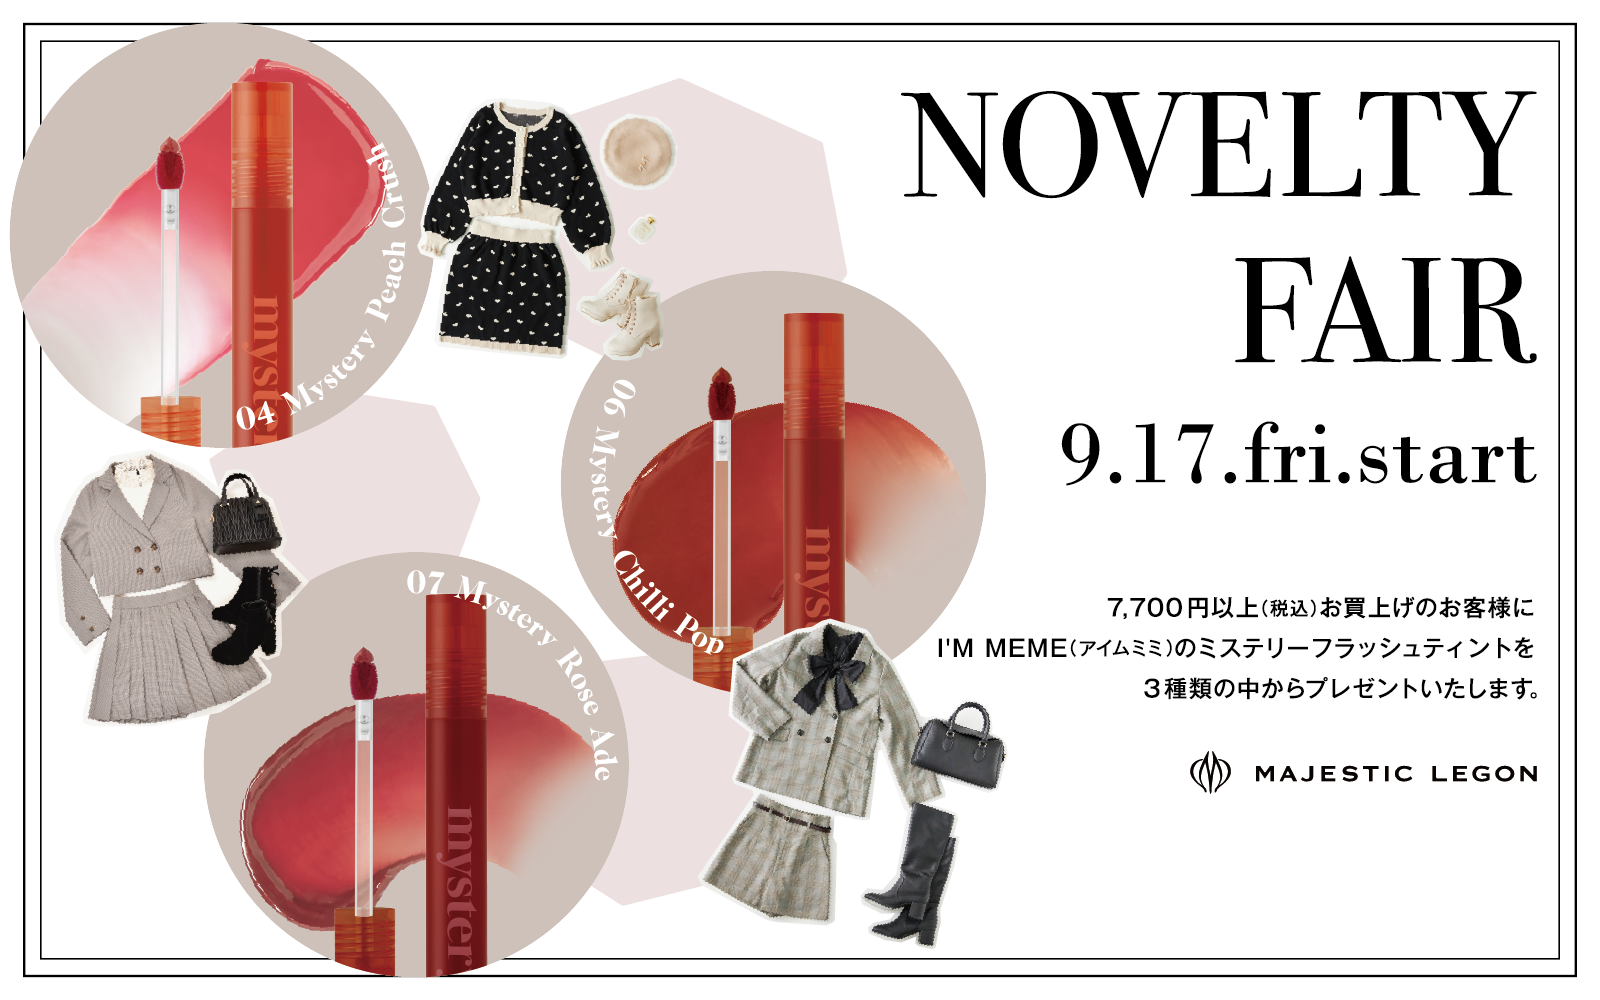 Novelty Fair ”I’M MEME ミステリーフラッシュティント” プレゼント 9.17.fri.START